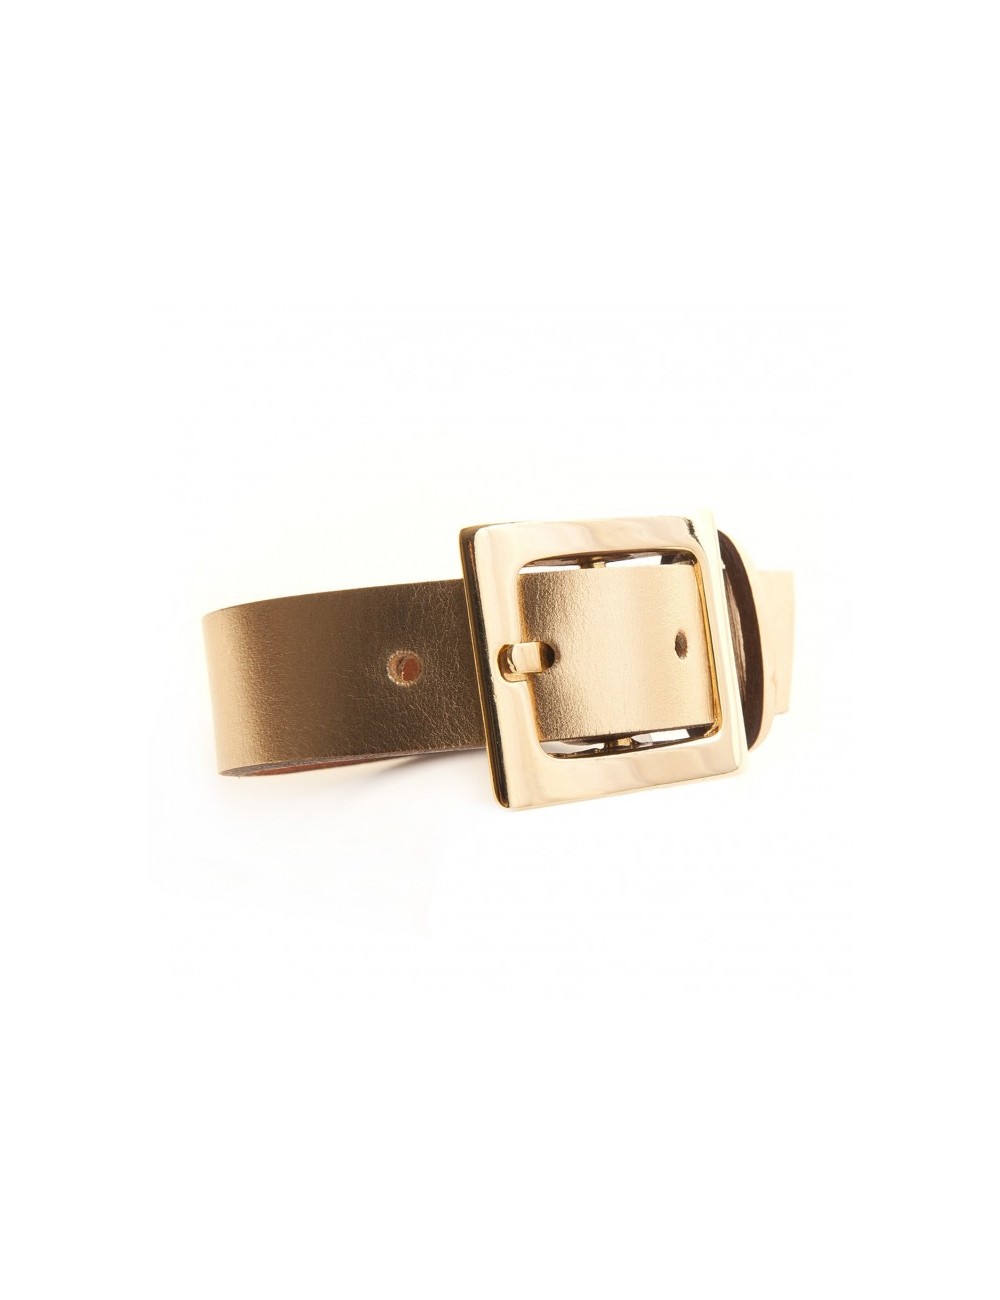 Bracelet en cuir et fermoir "ceinture" en métal doré.